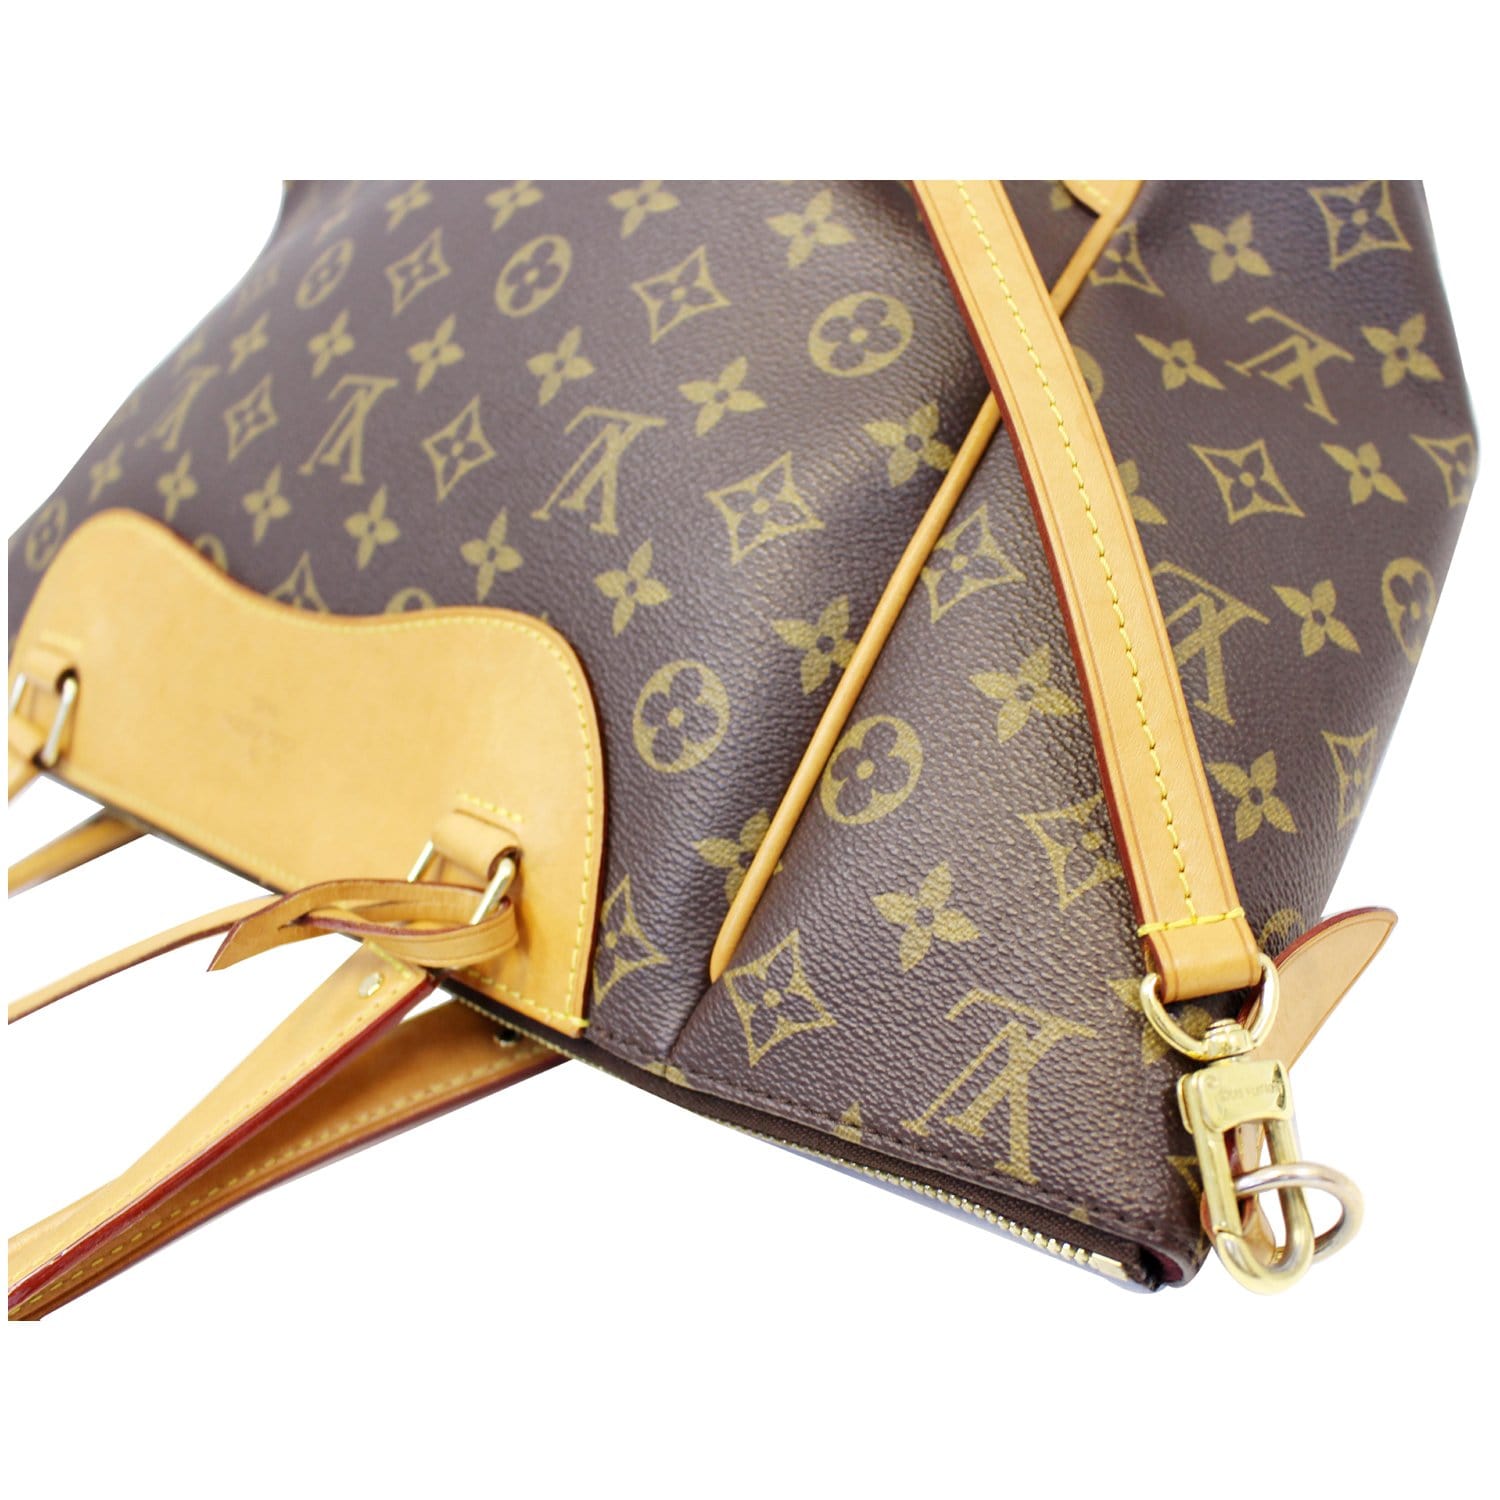 Louis Vuitton Estrela MM Tote Crossbody Handbag Monogram Brown